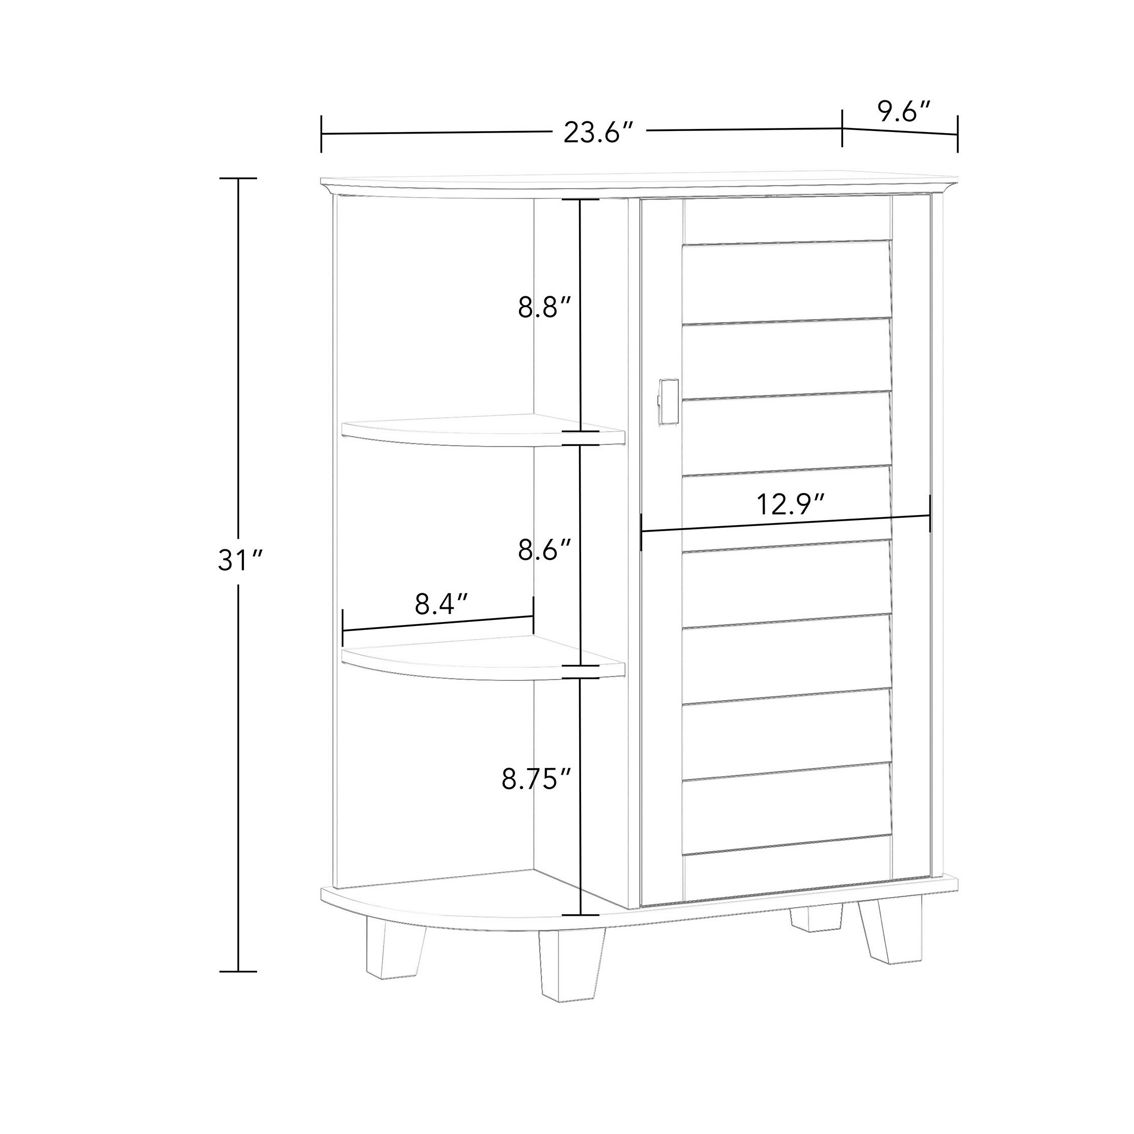 RiverRidge Brookfield Single Door Floor Cabinet with Side Shelves - Image 3 of 5